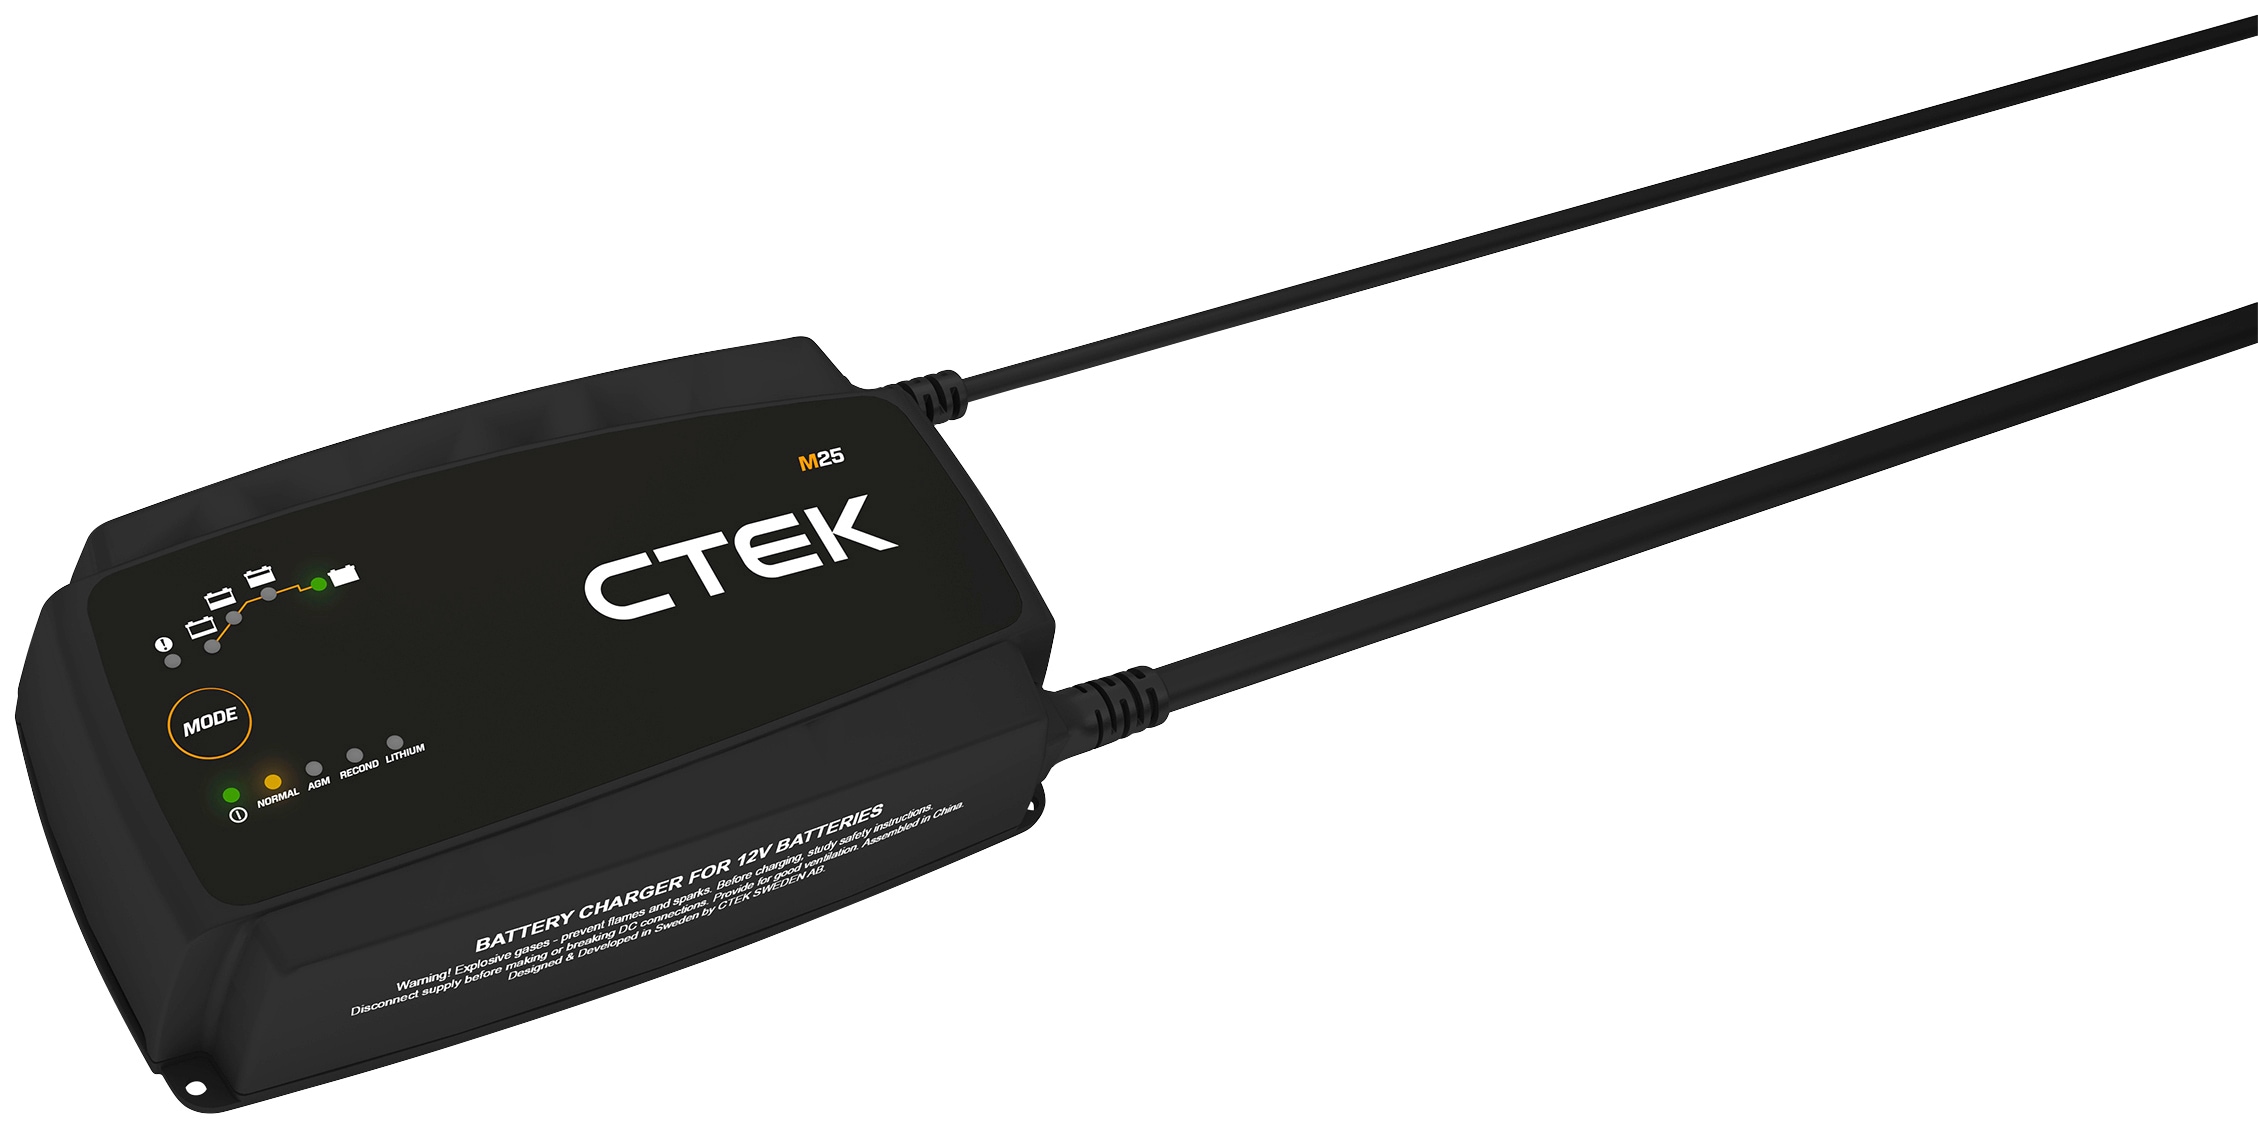 CTEK Batterie-Ladegerät »M25«, Vollautomatisch und einfach zu bedienen